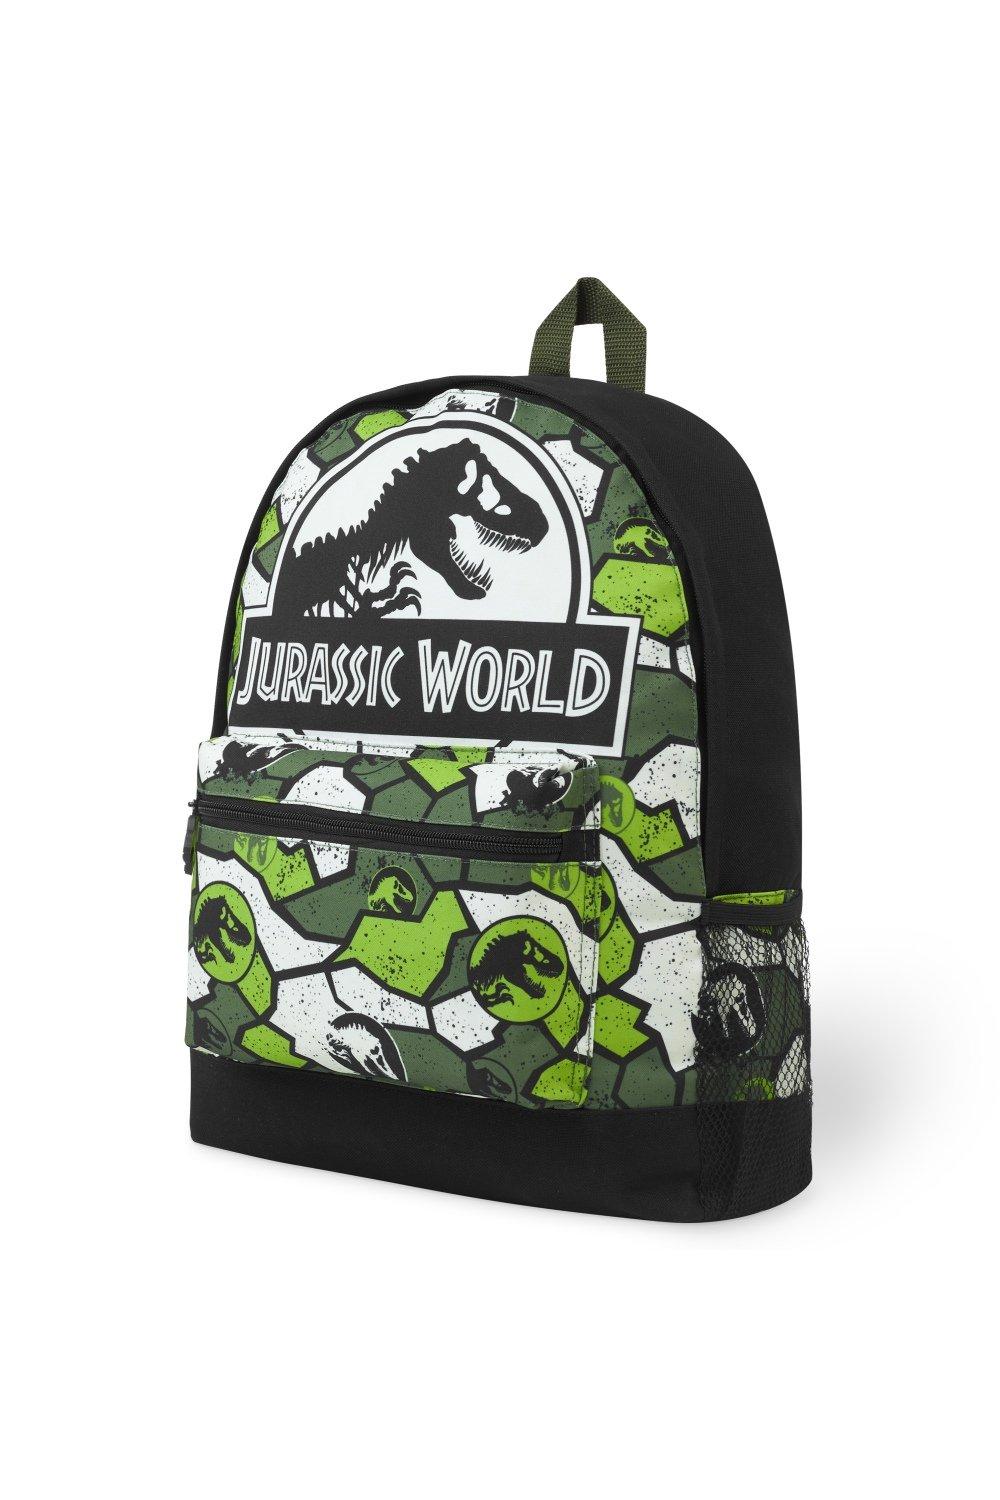 Камуфляжный рюкзак Jurassic World, зеленый командный рюкзак beaver для девочек и мальчиков забавный дорожный ранец для подростков школьная сумка